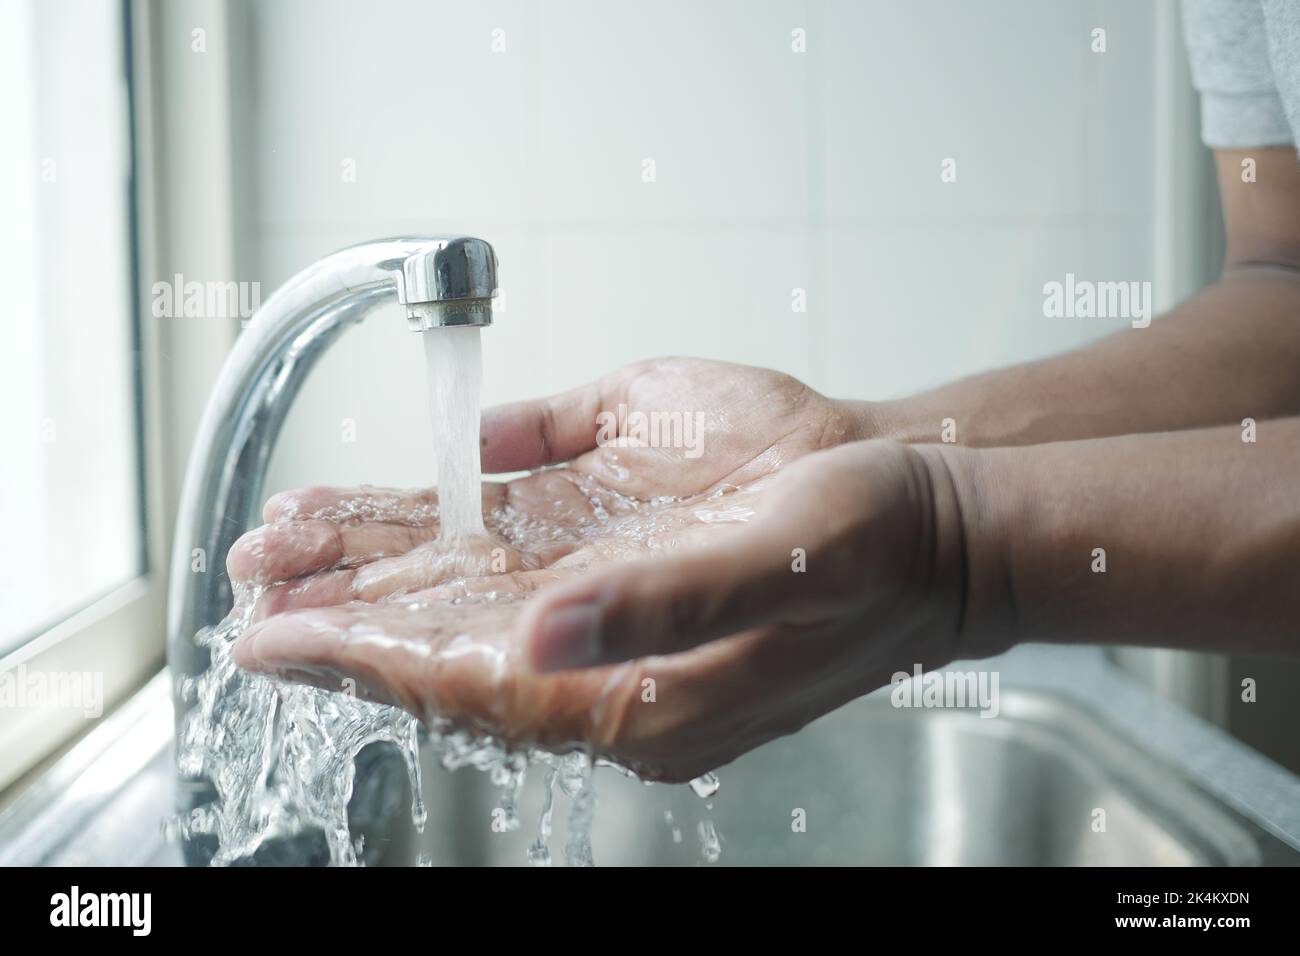 jeune homme se lavant les mains à l'eau chaude Banque D'Images